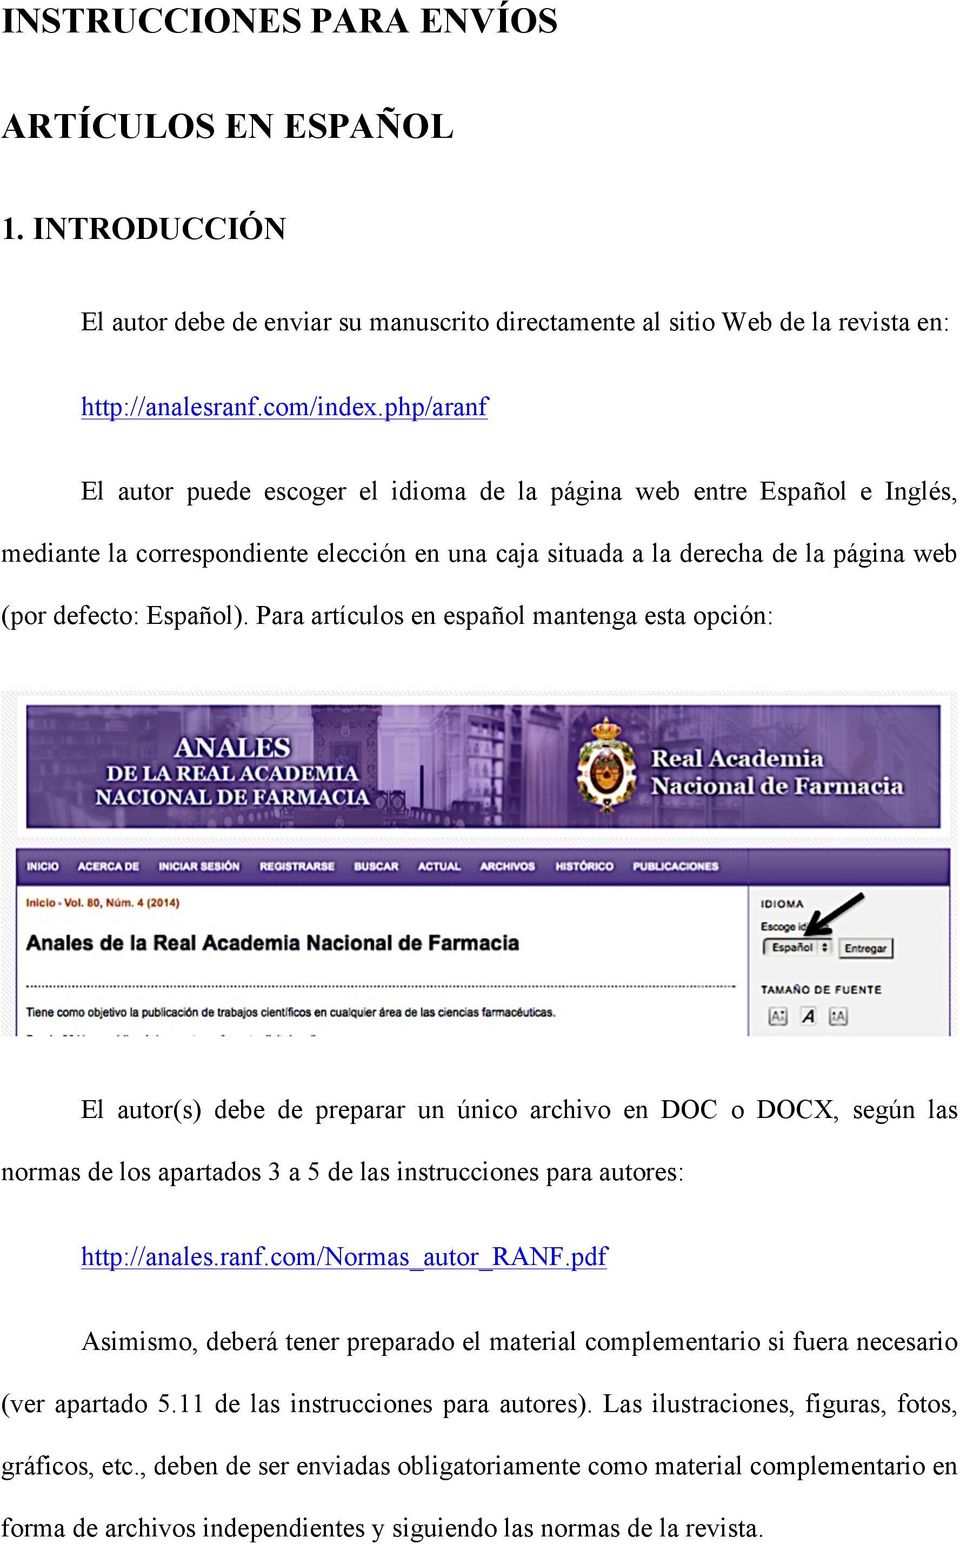 Para artículos en español mantenga esta opción: El autor(s) debe de preparar un único archivo en DOC o DOCX, según las normas de los apartados 3 a 5 de las instrucciones para autores: http://anales.